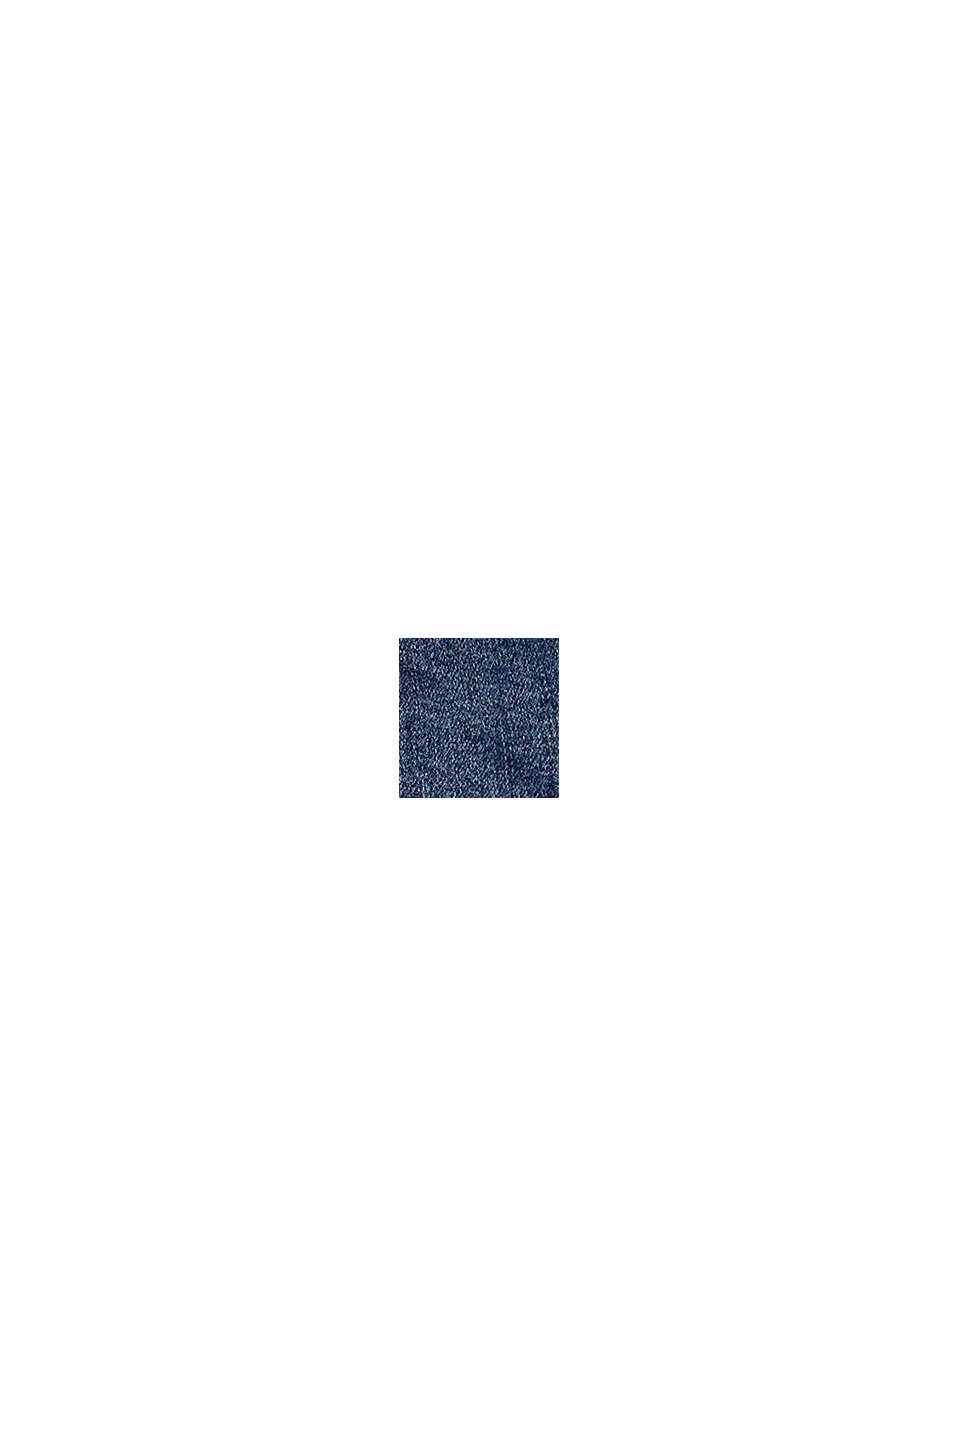 Short en jean en coton à taille ajustable, BLUE MEDIUM WASHED, swatch